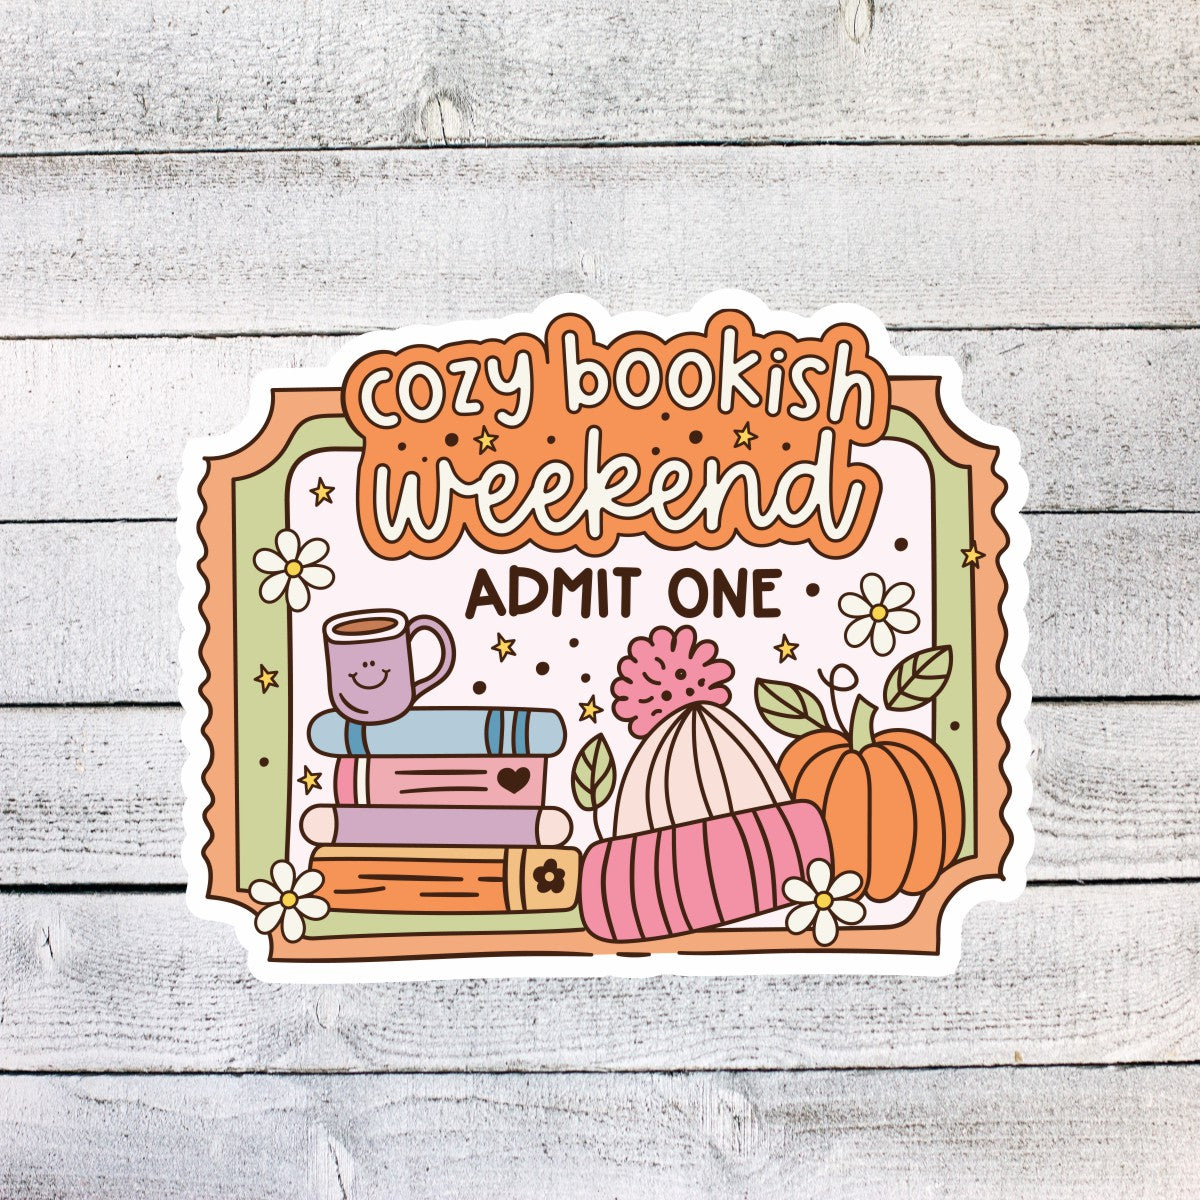 Cozy Bookish Weekend Admit One ticket Sticker